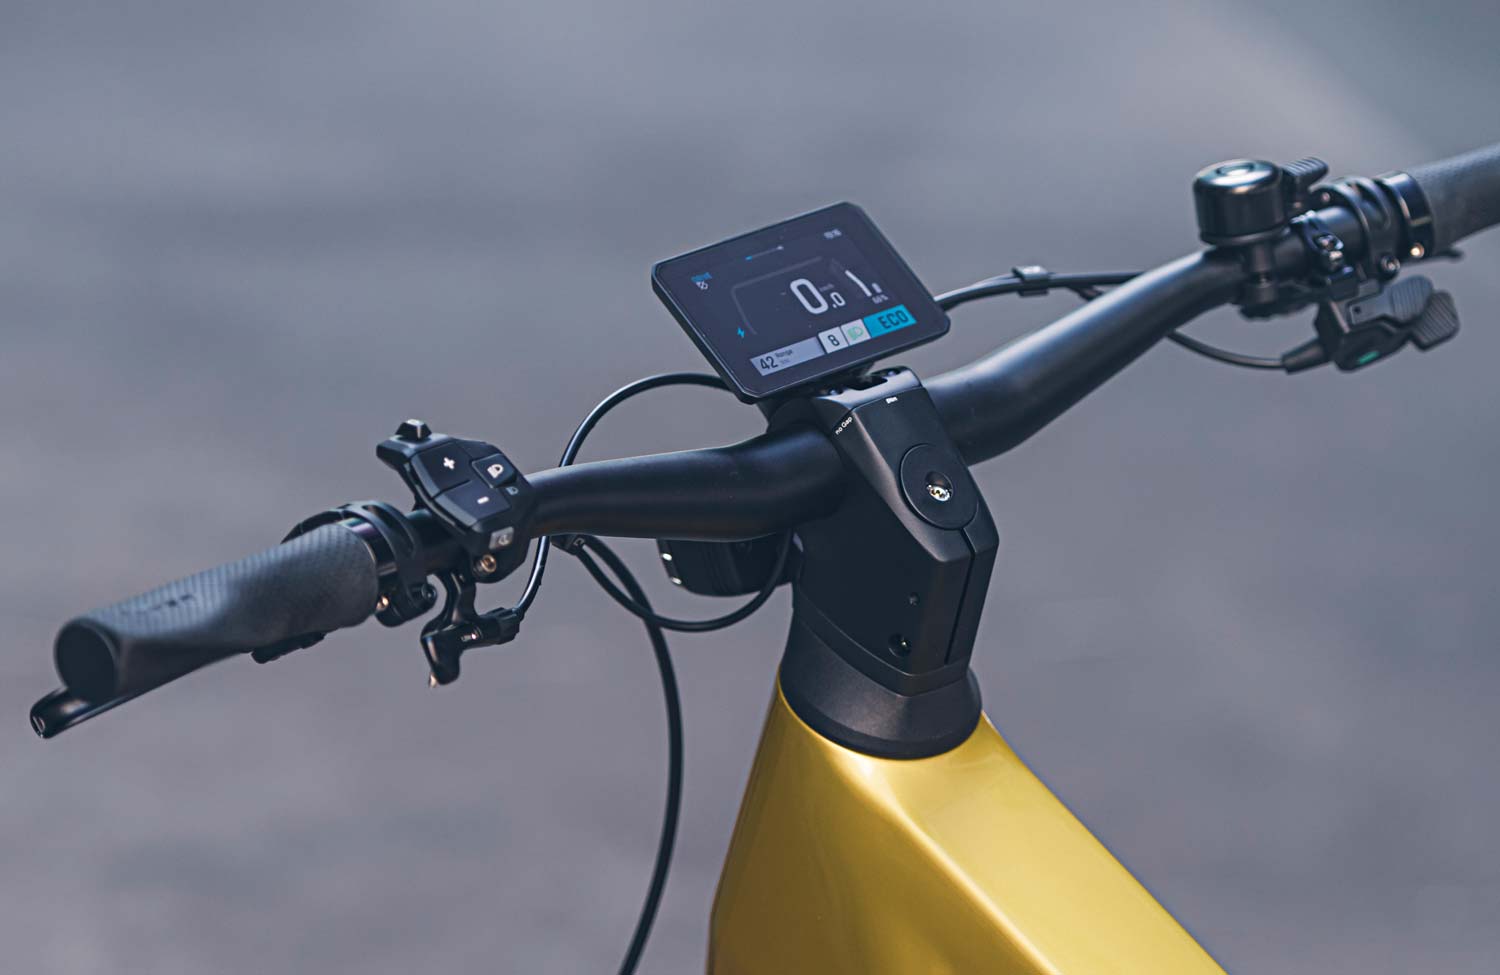 Exclusivité – Test du Pinion E-Drive : le vélo électrique à boîte de  vitesses, une vraie révolution ?